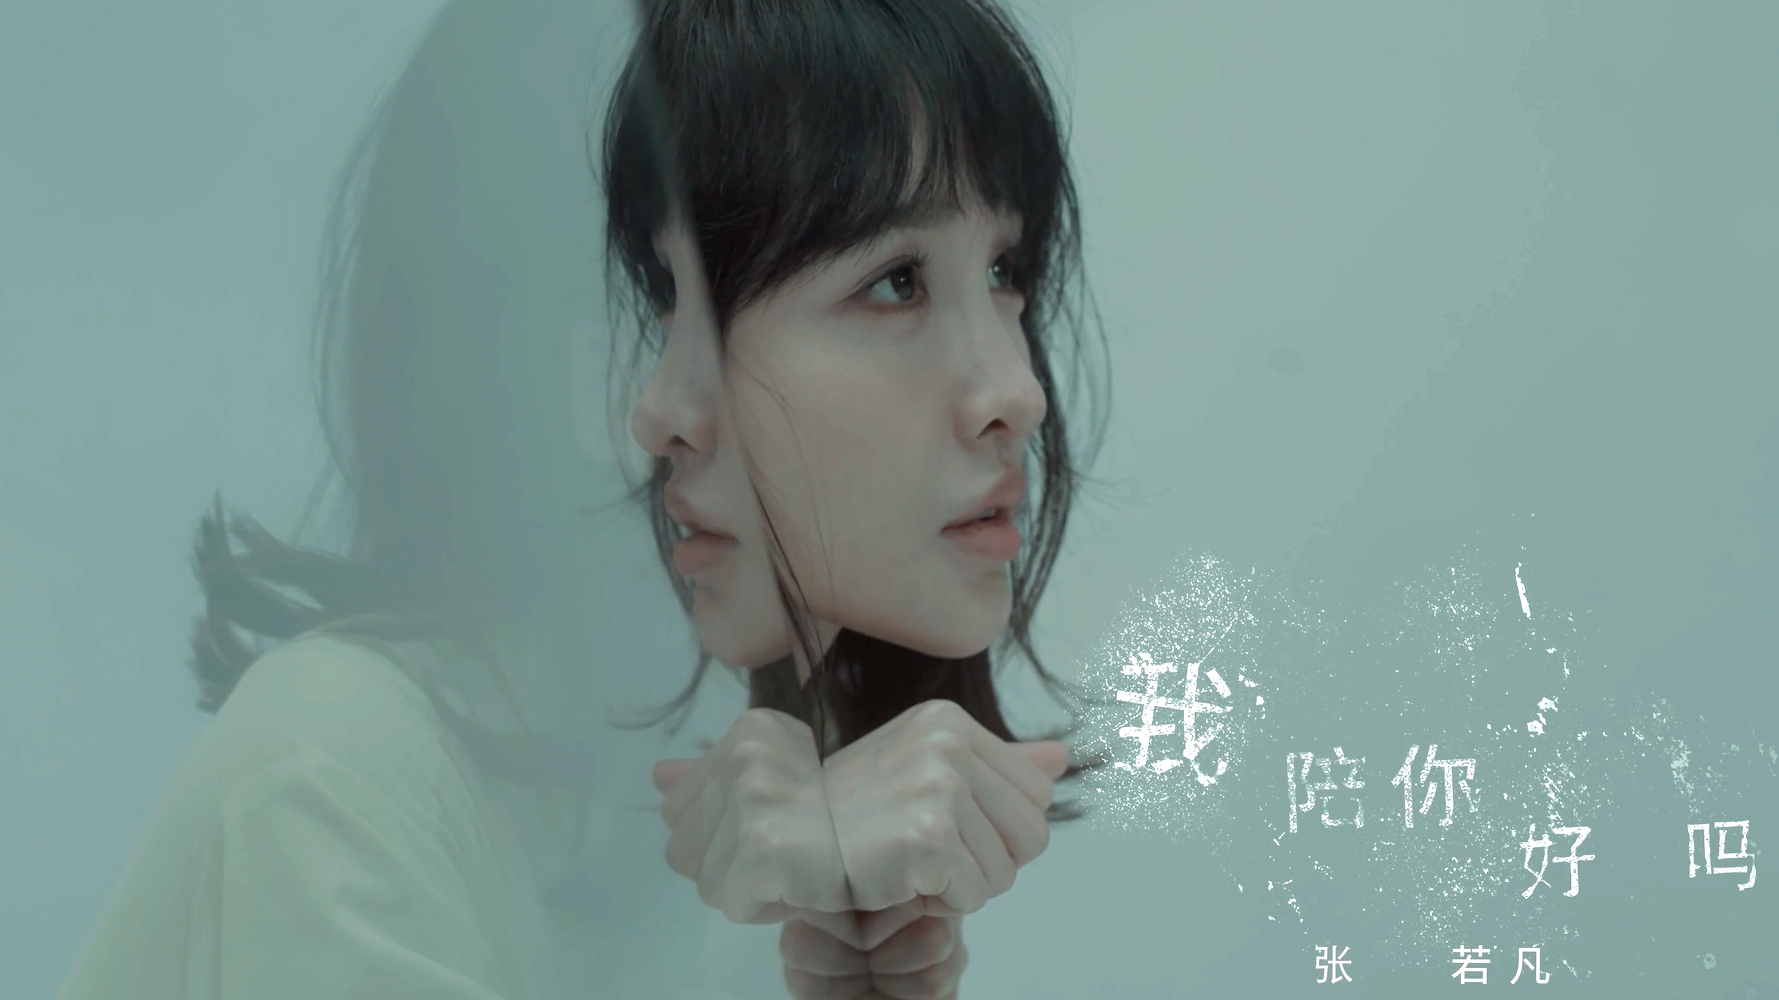 正义的算法︱张若凡《我陪你好吗》︱插曲MV完整版